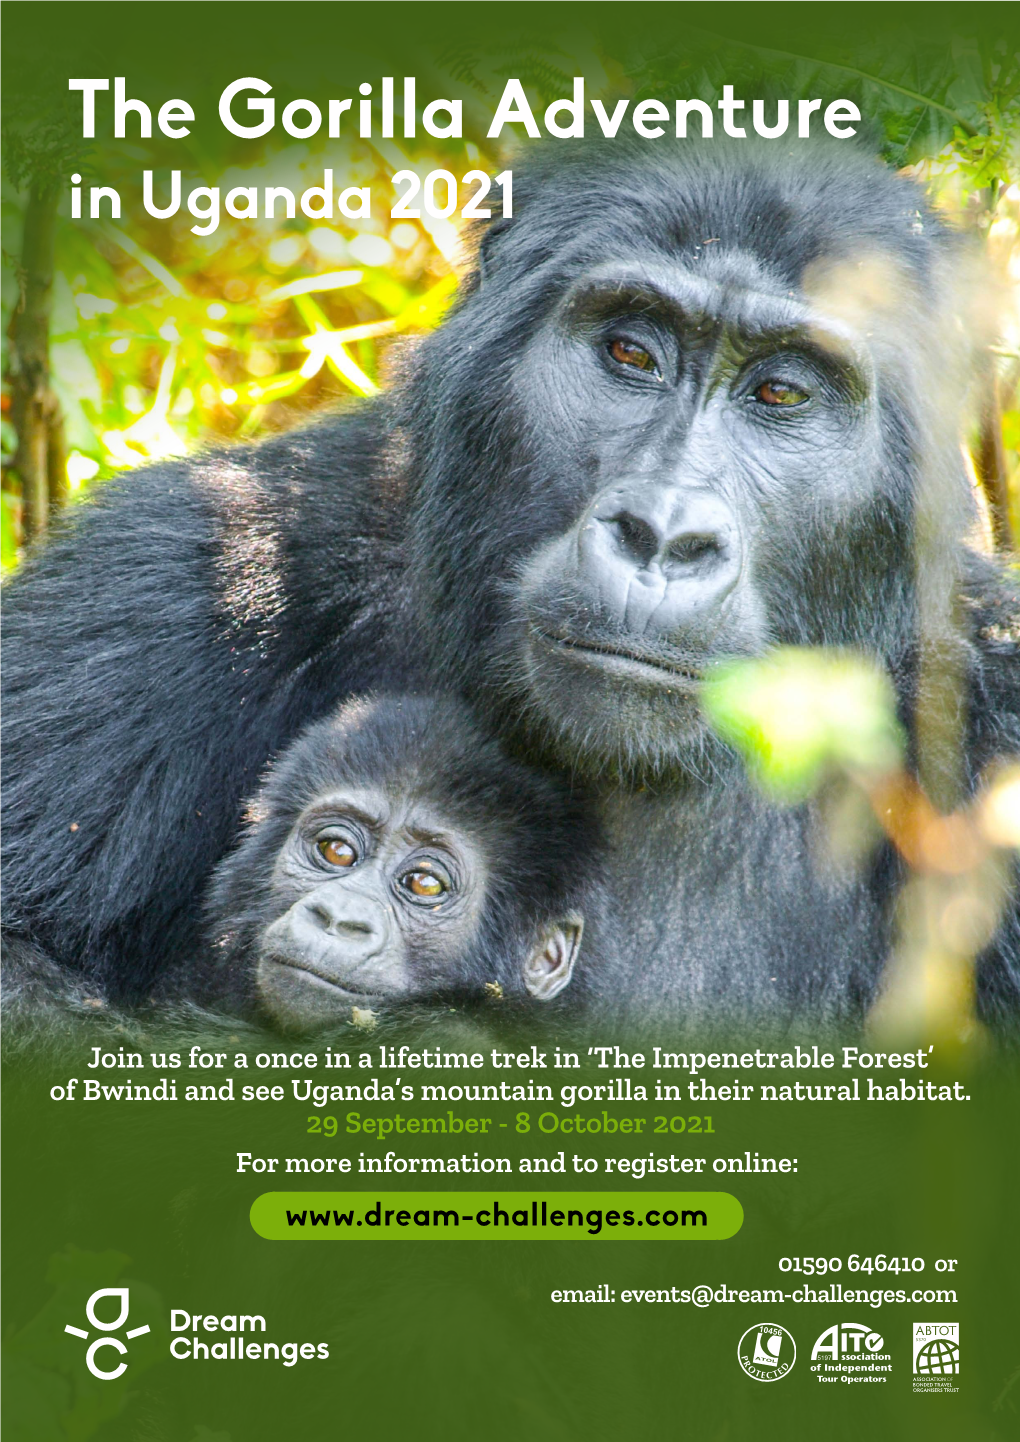 The Gorilla Adventure in Uganda 2021